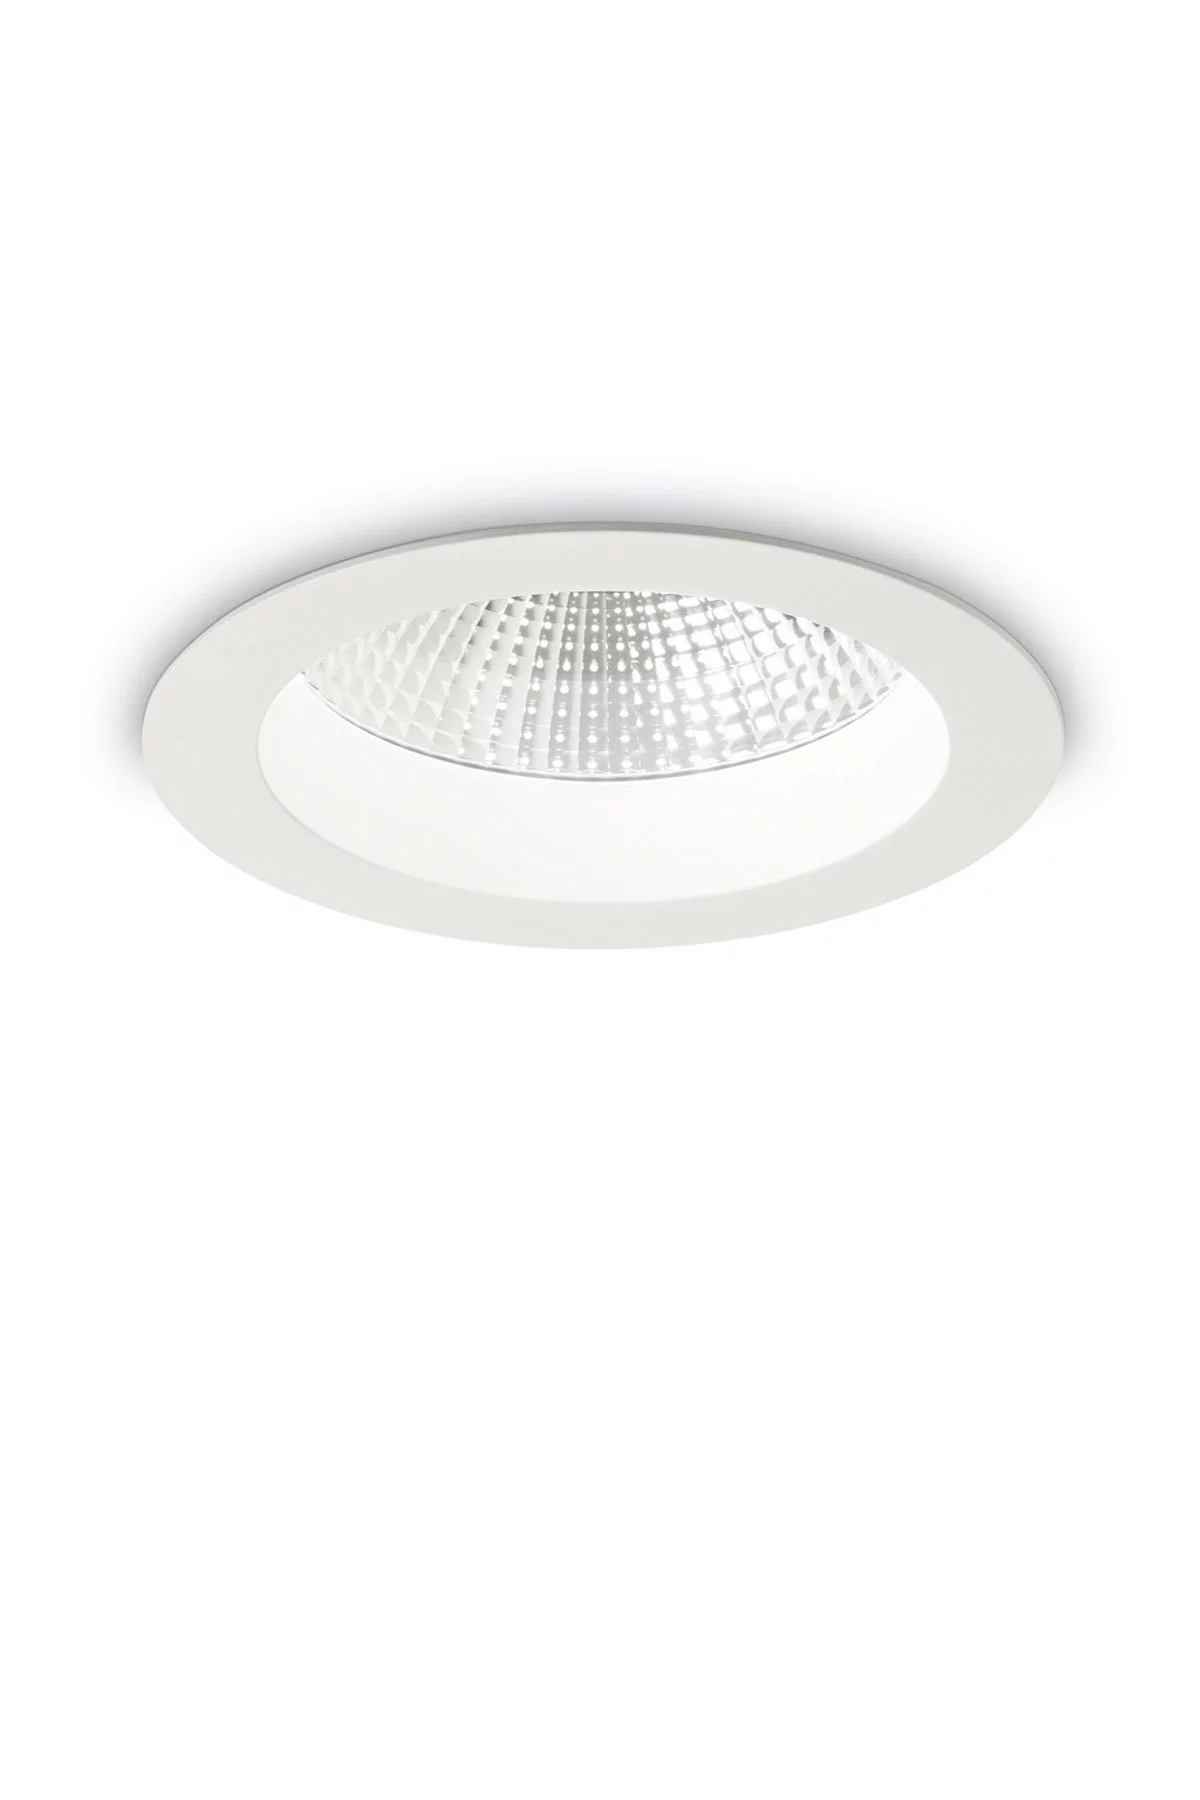   
                        Точечный светильник IDEAL LUX  (Италия) 13300    
                         в стиле хай-тек.  
                        Тип источника света: встроенные светодиоды led.                         Форма: круг.                                                                          фото 1